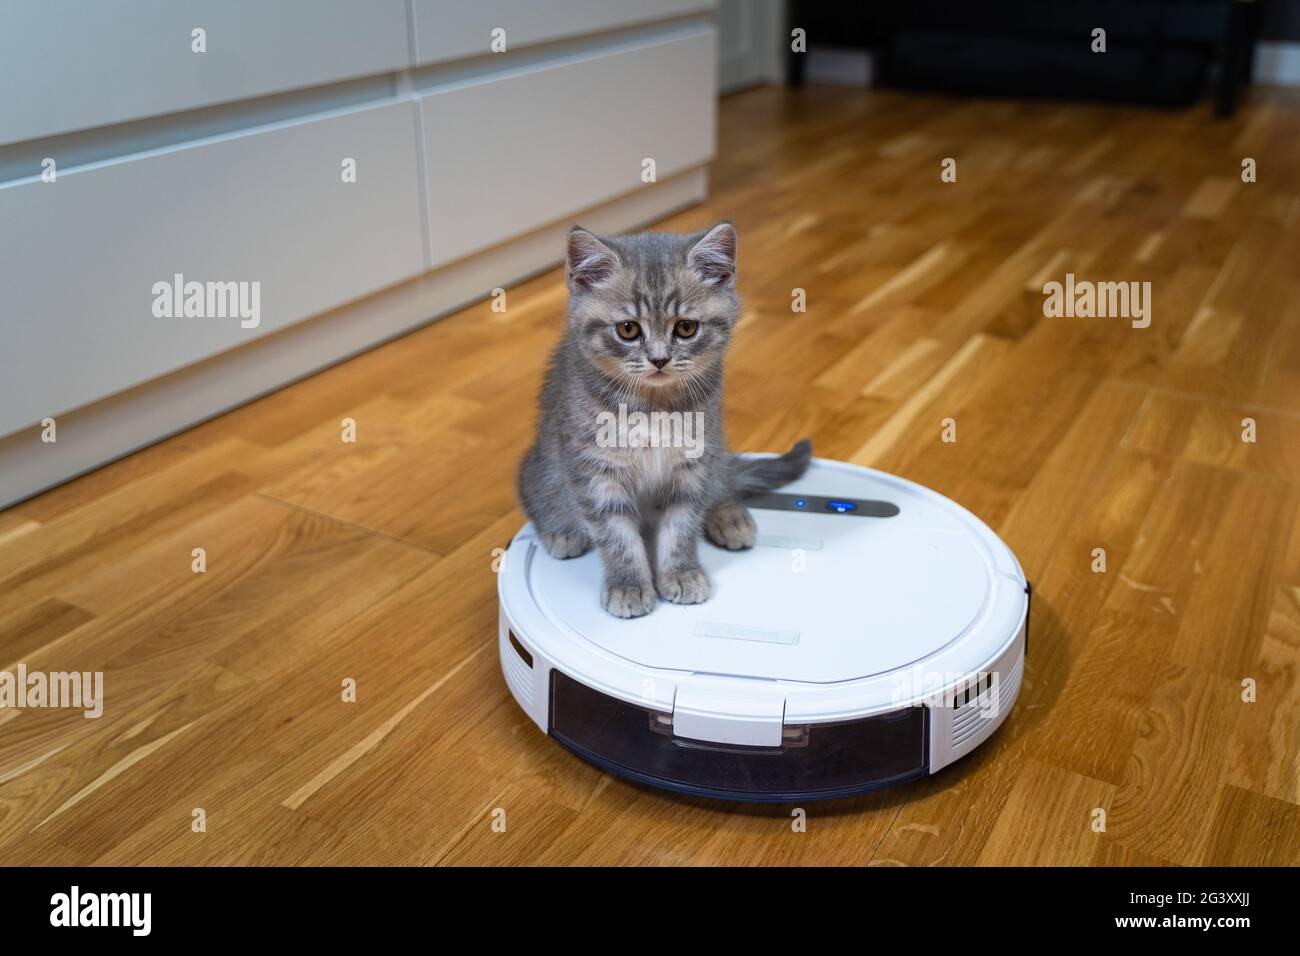 L'équipement automatique aide à la maison. Un chaton drôle de Scottish Straight race de couleur grise avec des rayures joue à la maison pendant que Banque D'Images